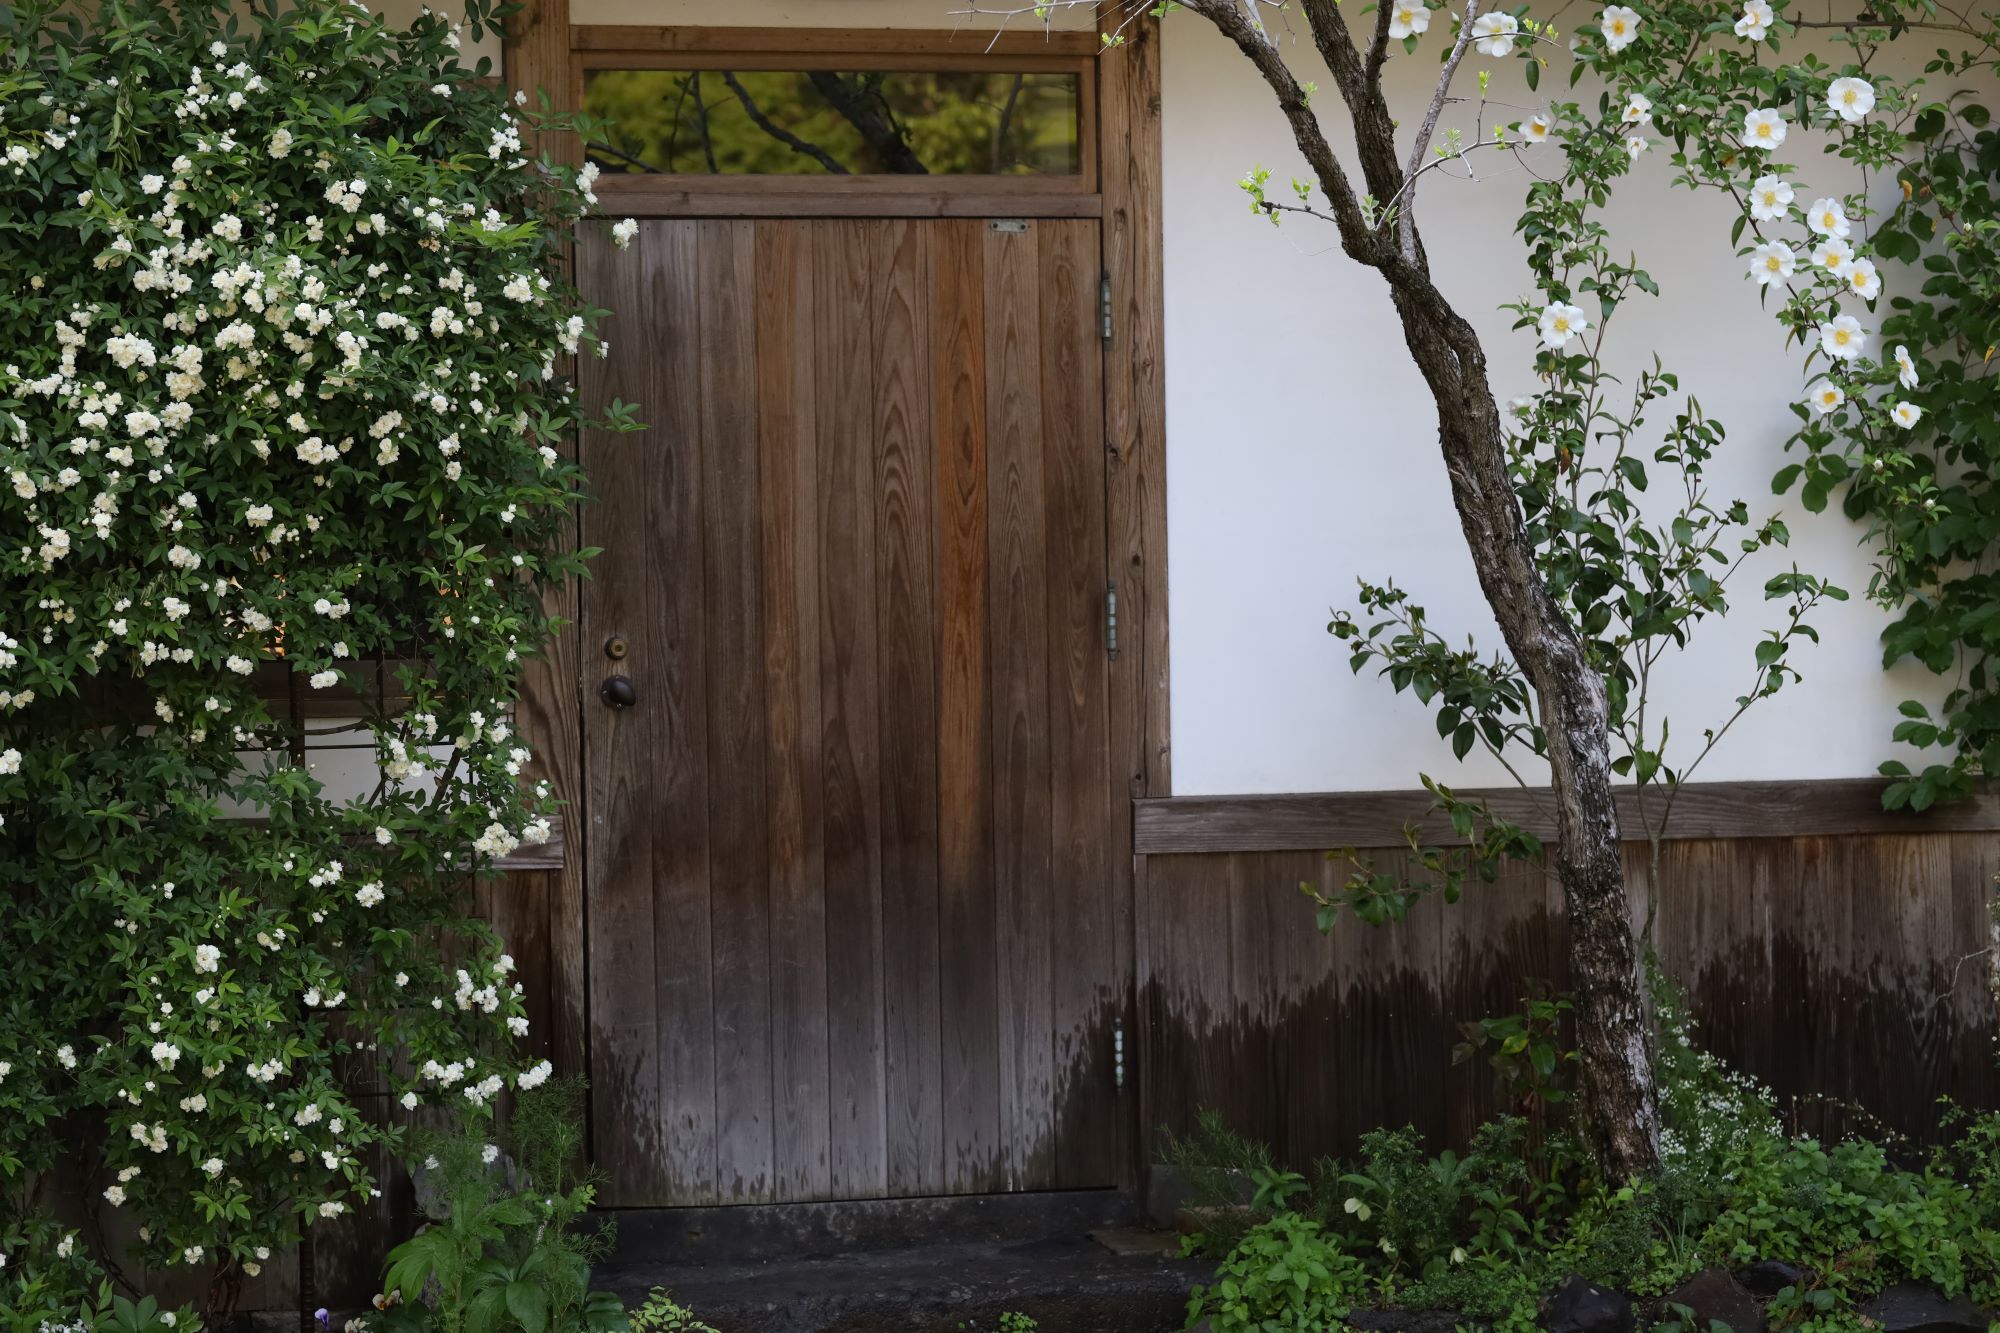 細川家の台所の扉の横にあるモッコウバラとナニワイバラは例年より早く満開になった。